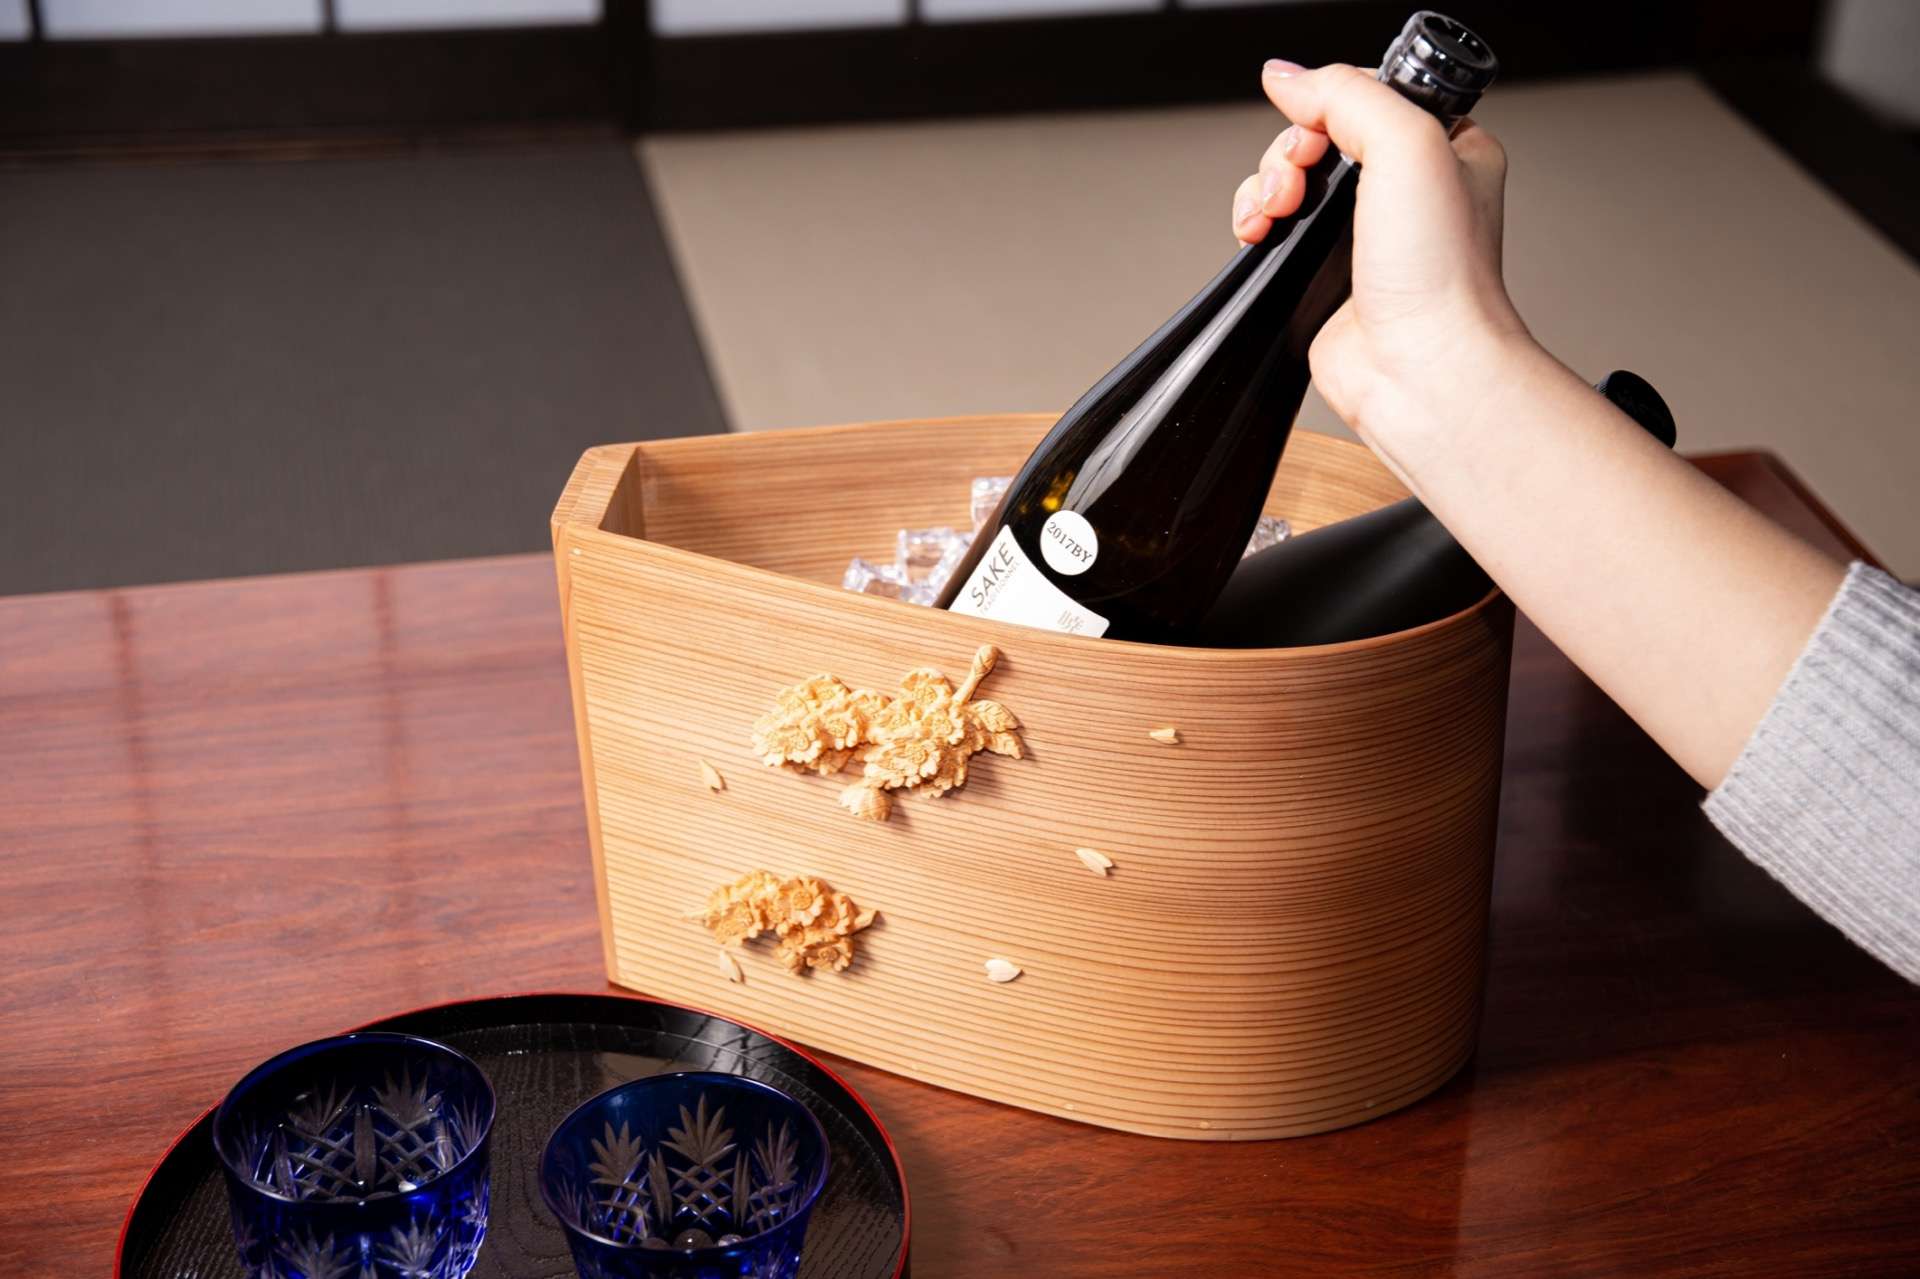 木で作られた高級ボトルクーラー、ワインだけでなく日本酒にも